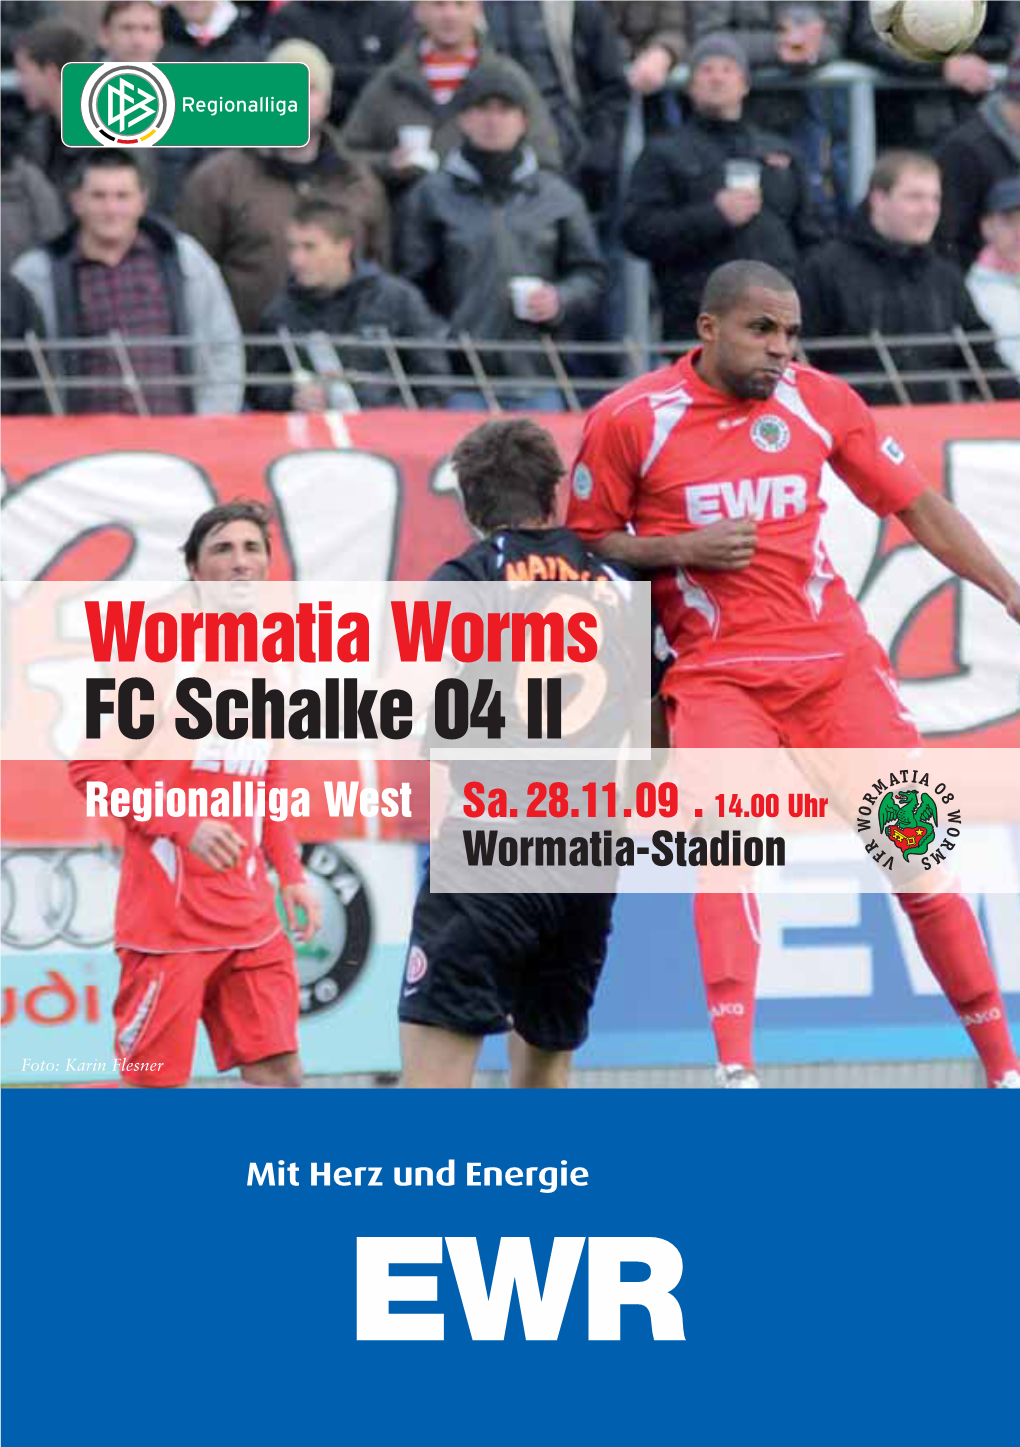 Wormatia Worms FC Schalke 04 II